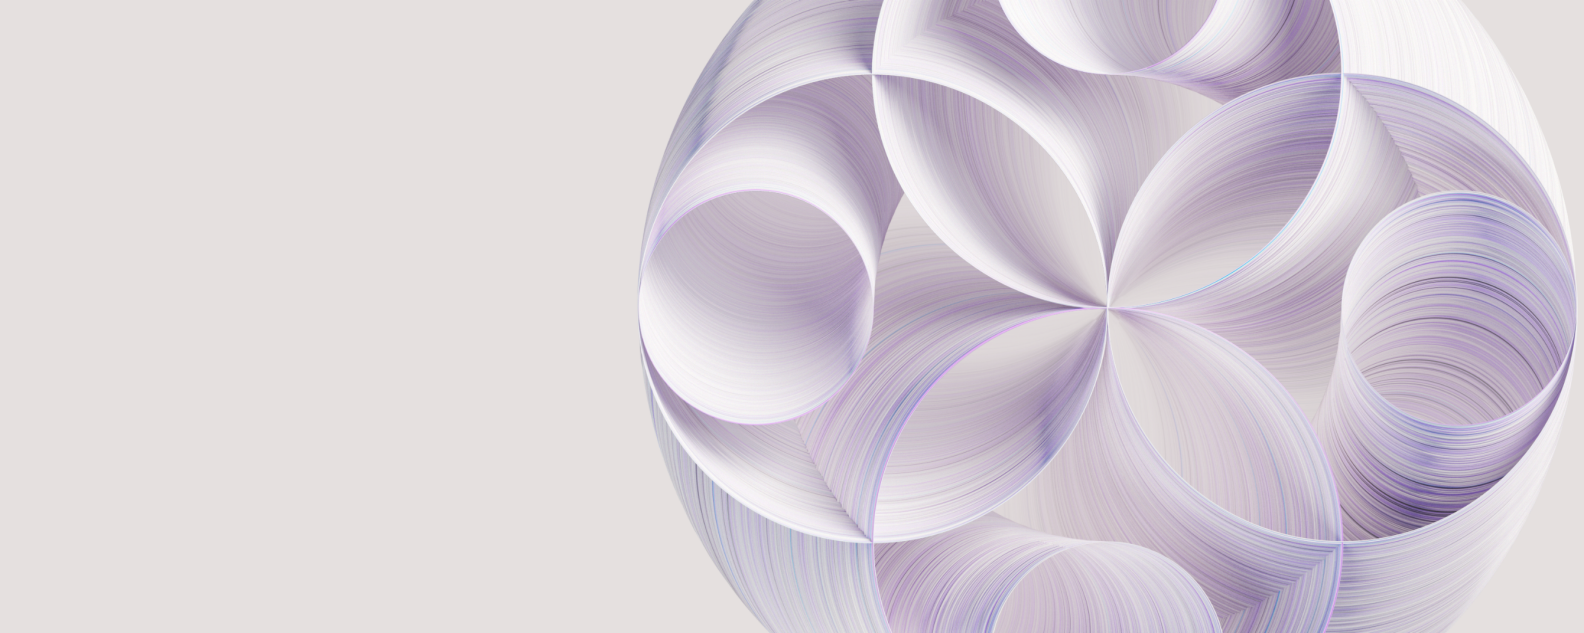 紫色の同心円が交差する抽象的なイメージ